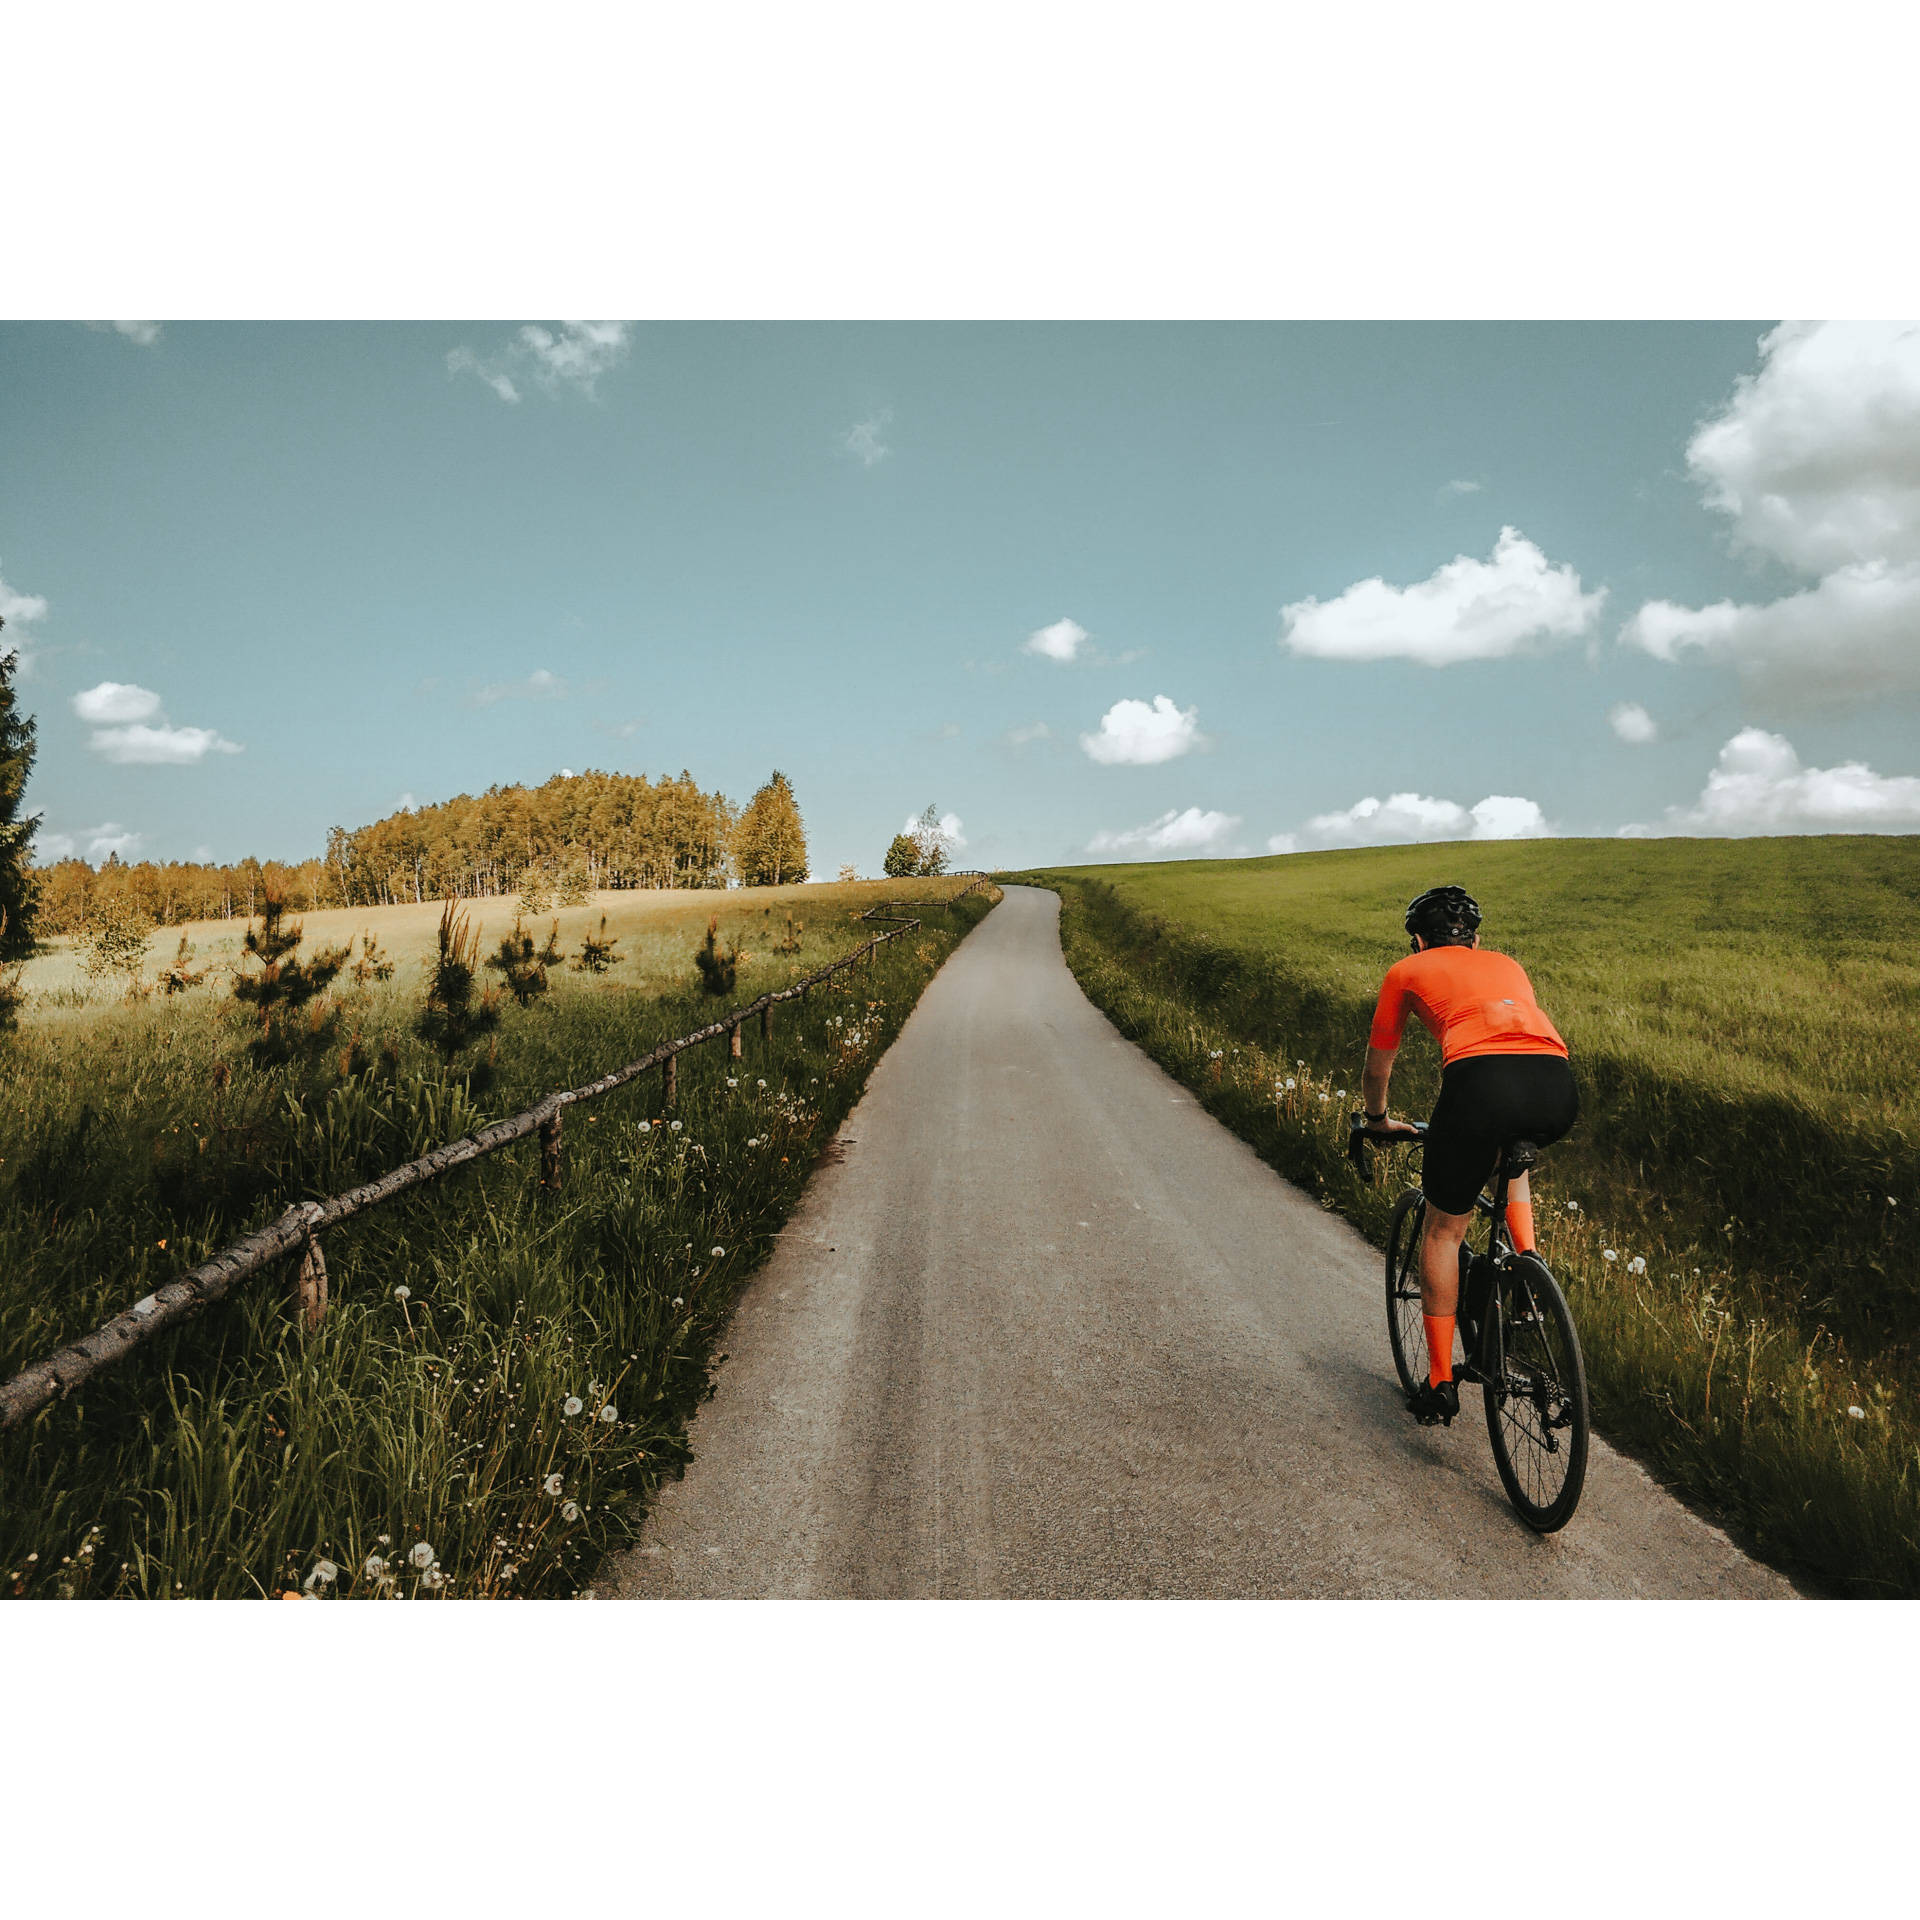 Rowerzysta w pomarańczowo-czarnym stroju jadący drogą asfaltową mijając zielone łąki odgrodzone z prawej strony drewnianymi belkami